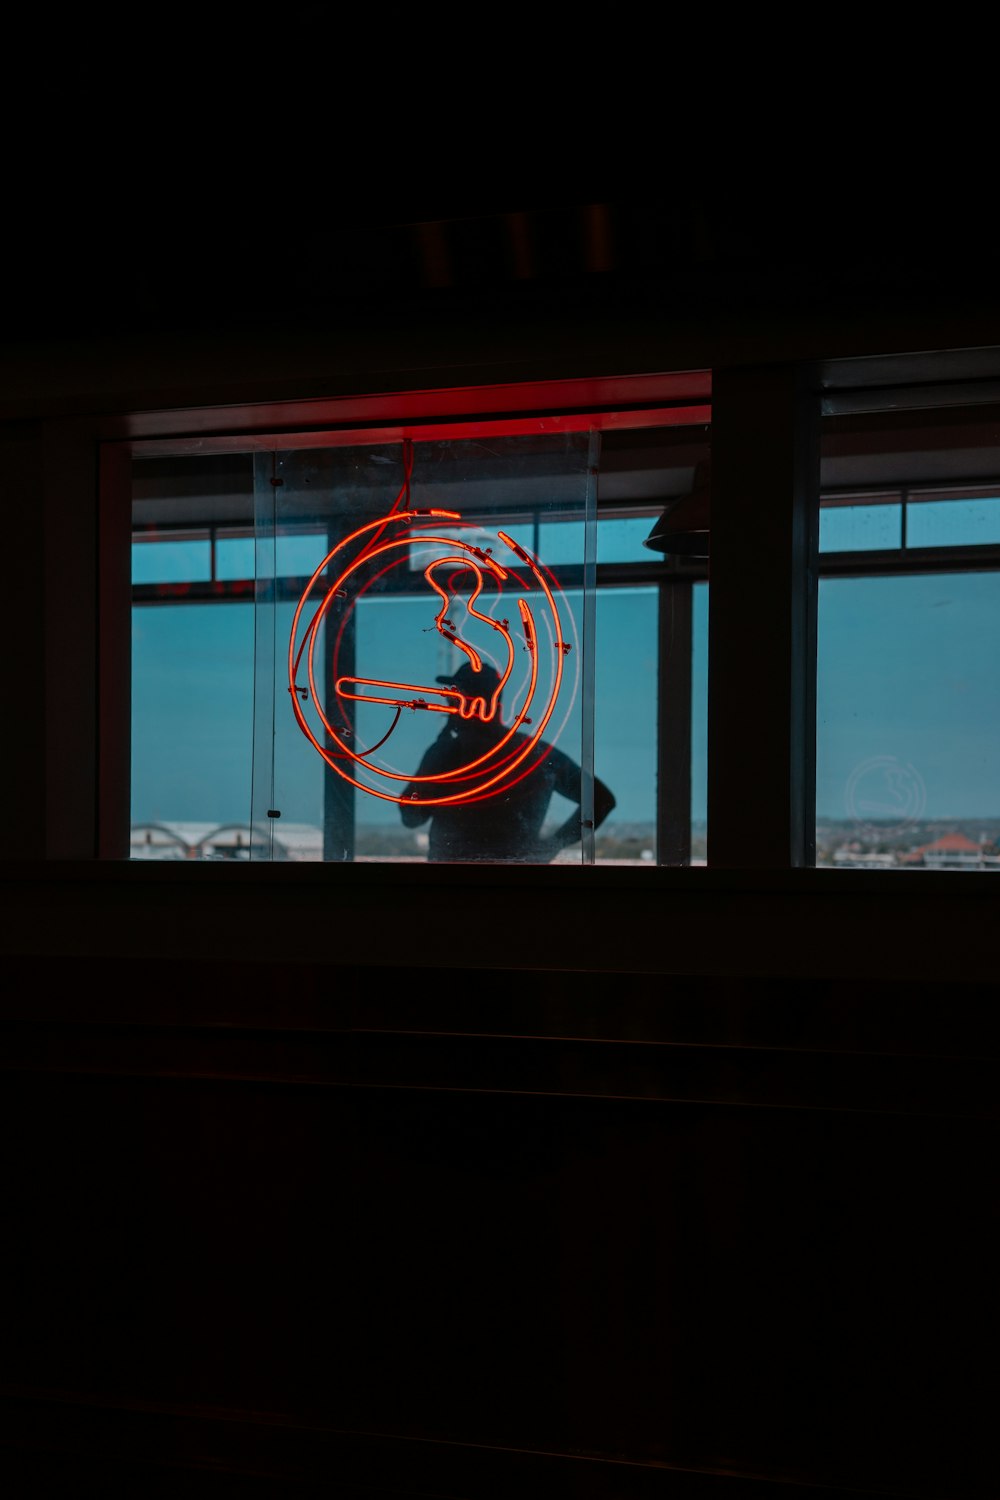 Une enseigne au néon devant une fenêtre dans une pièce sombre